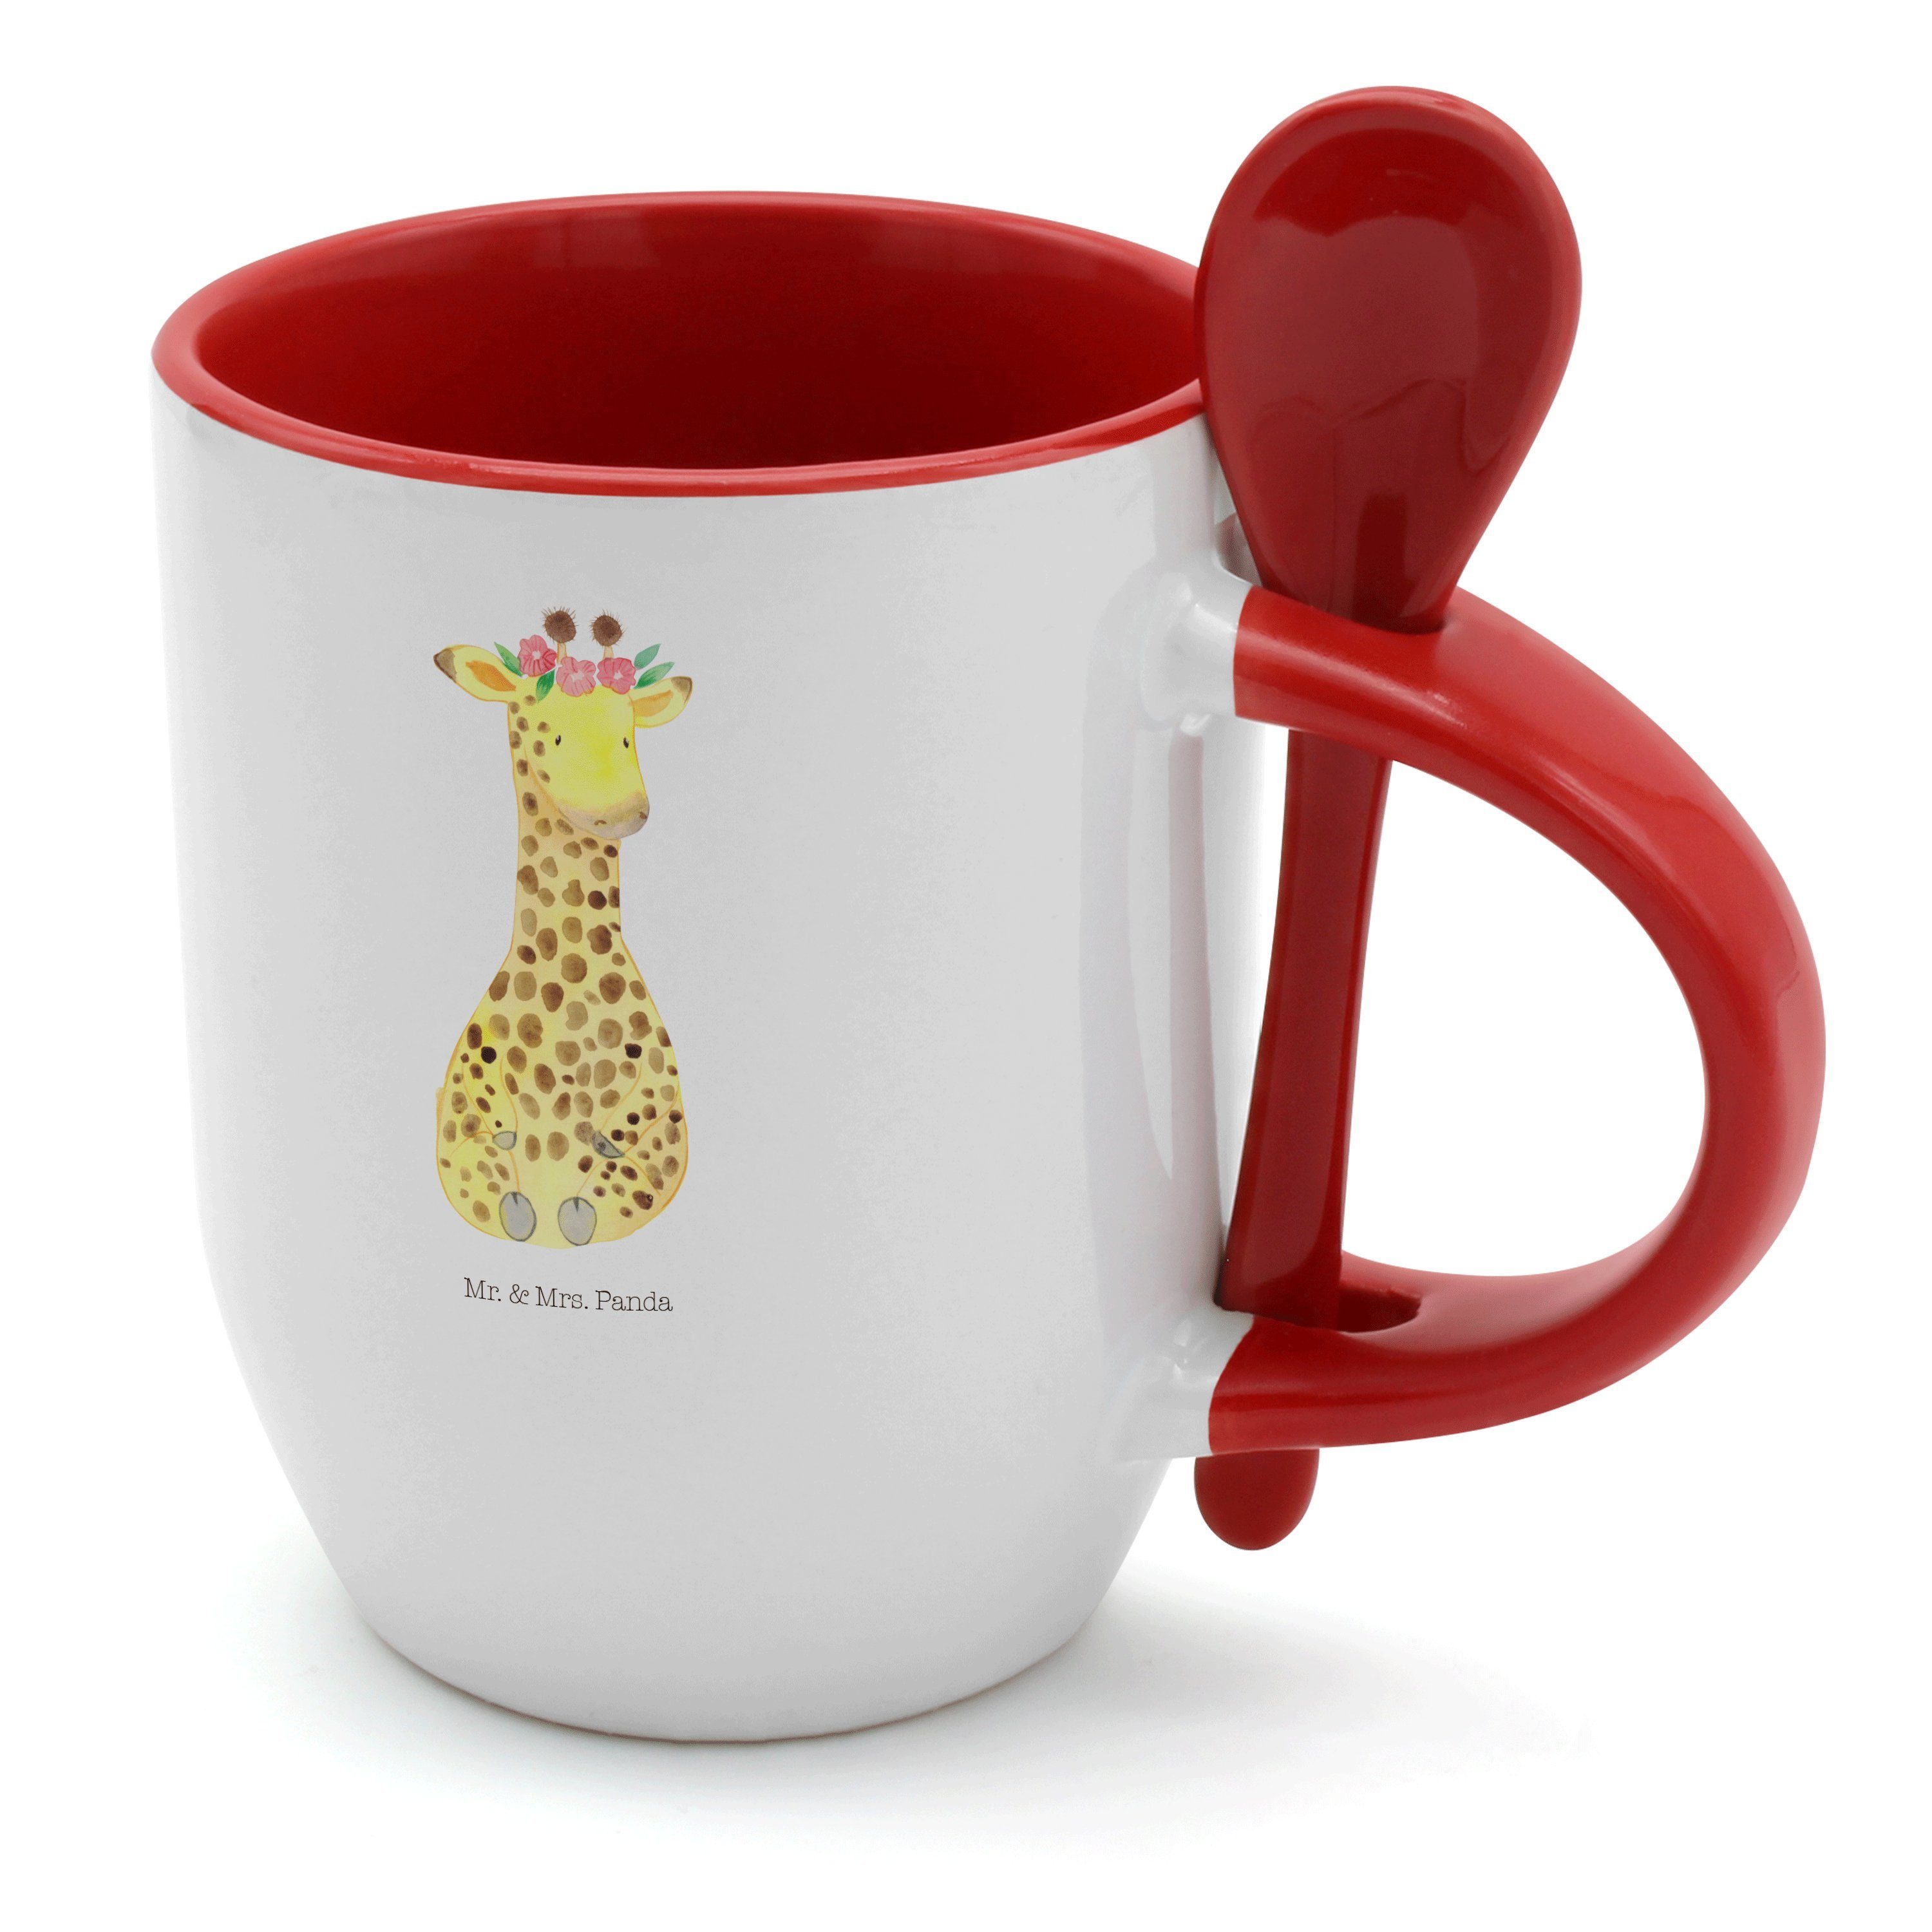 Mr. & Mrs. Panda Tasse Giraffe Blumenkranz - Weiß - Geschenk, Kaffeetasse, Tasse mit Spruch, Keramik